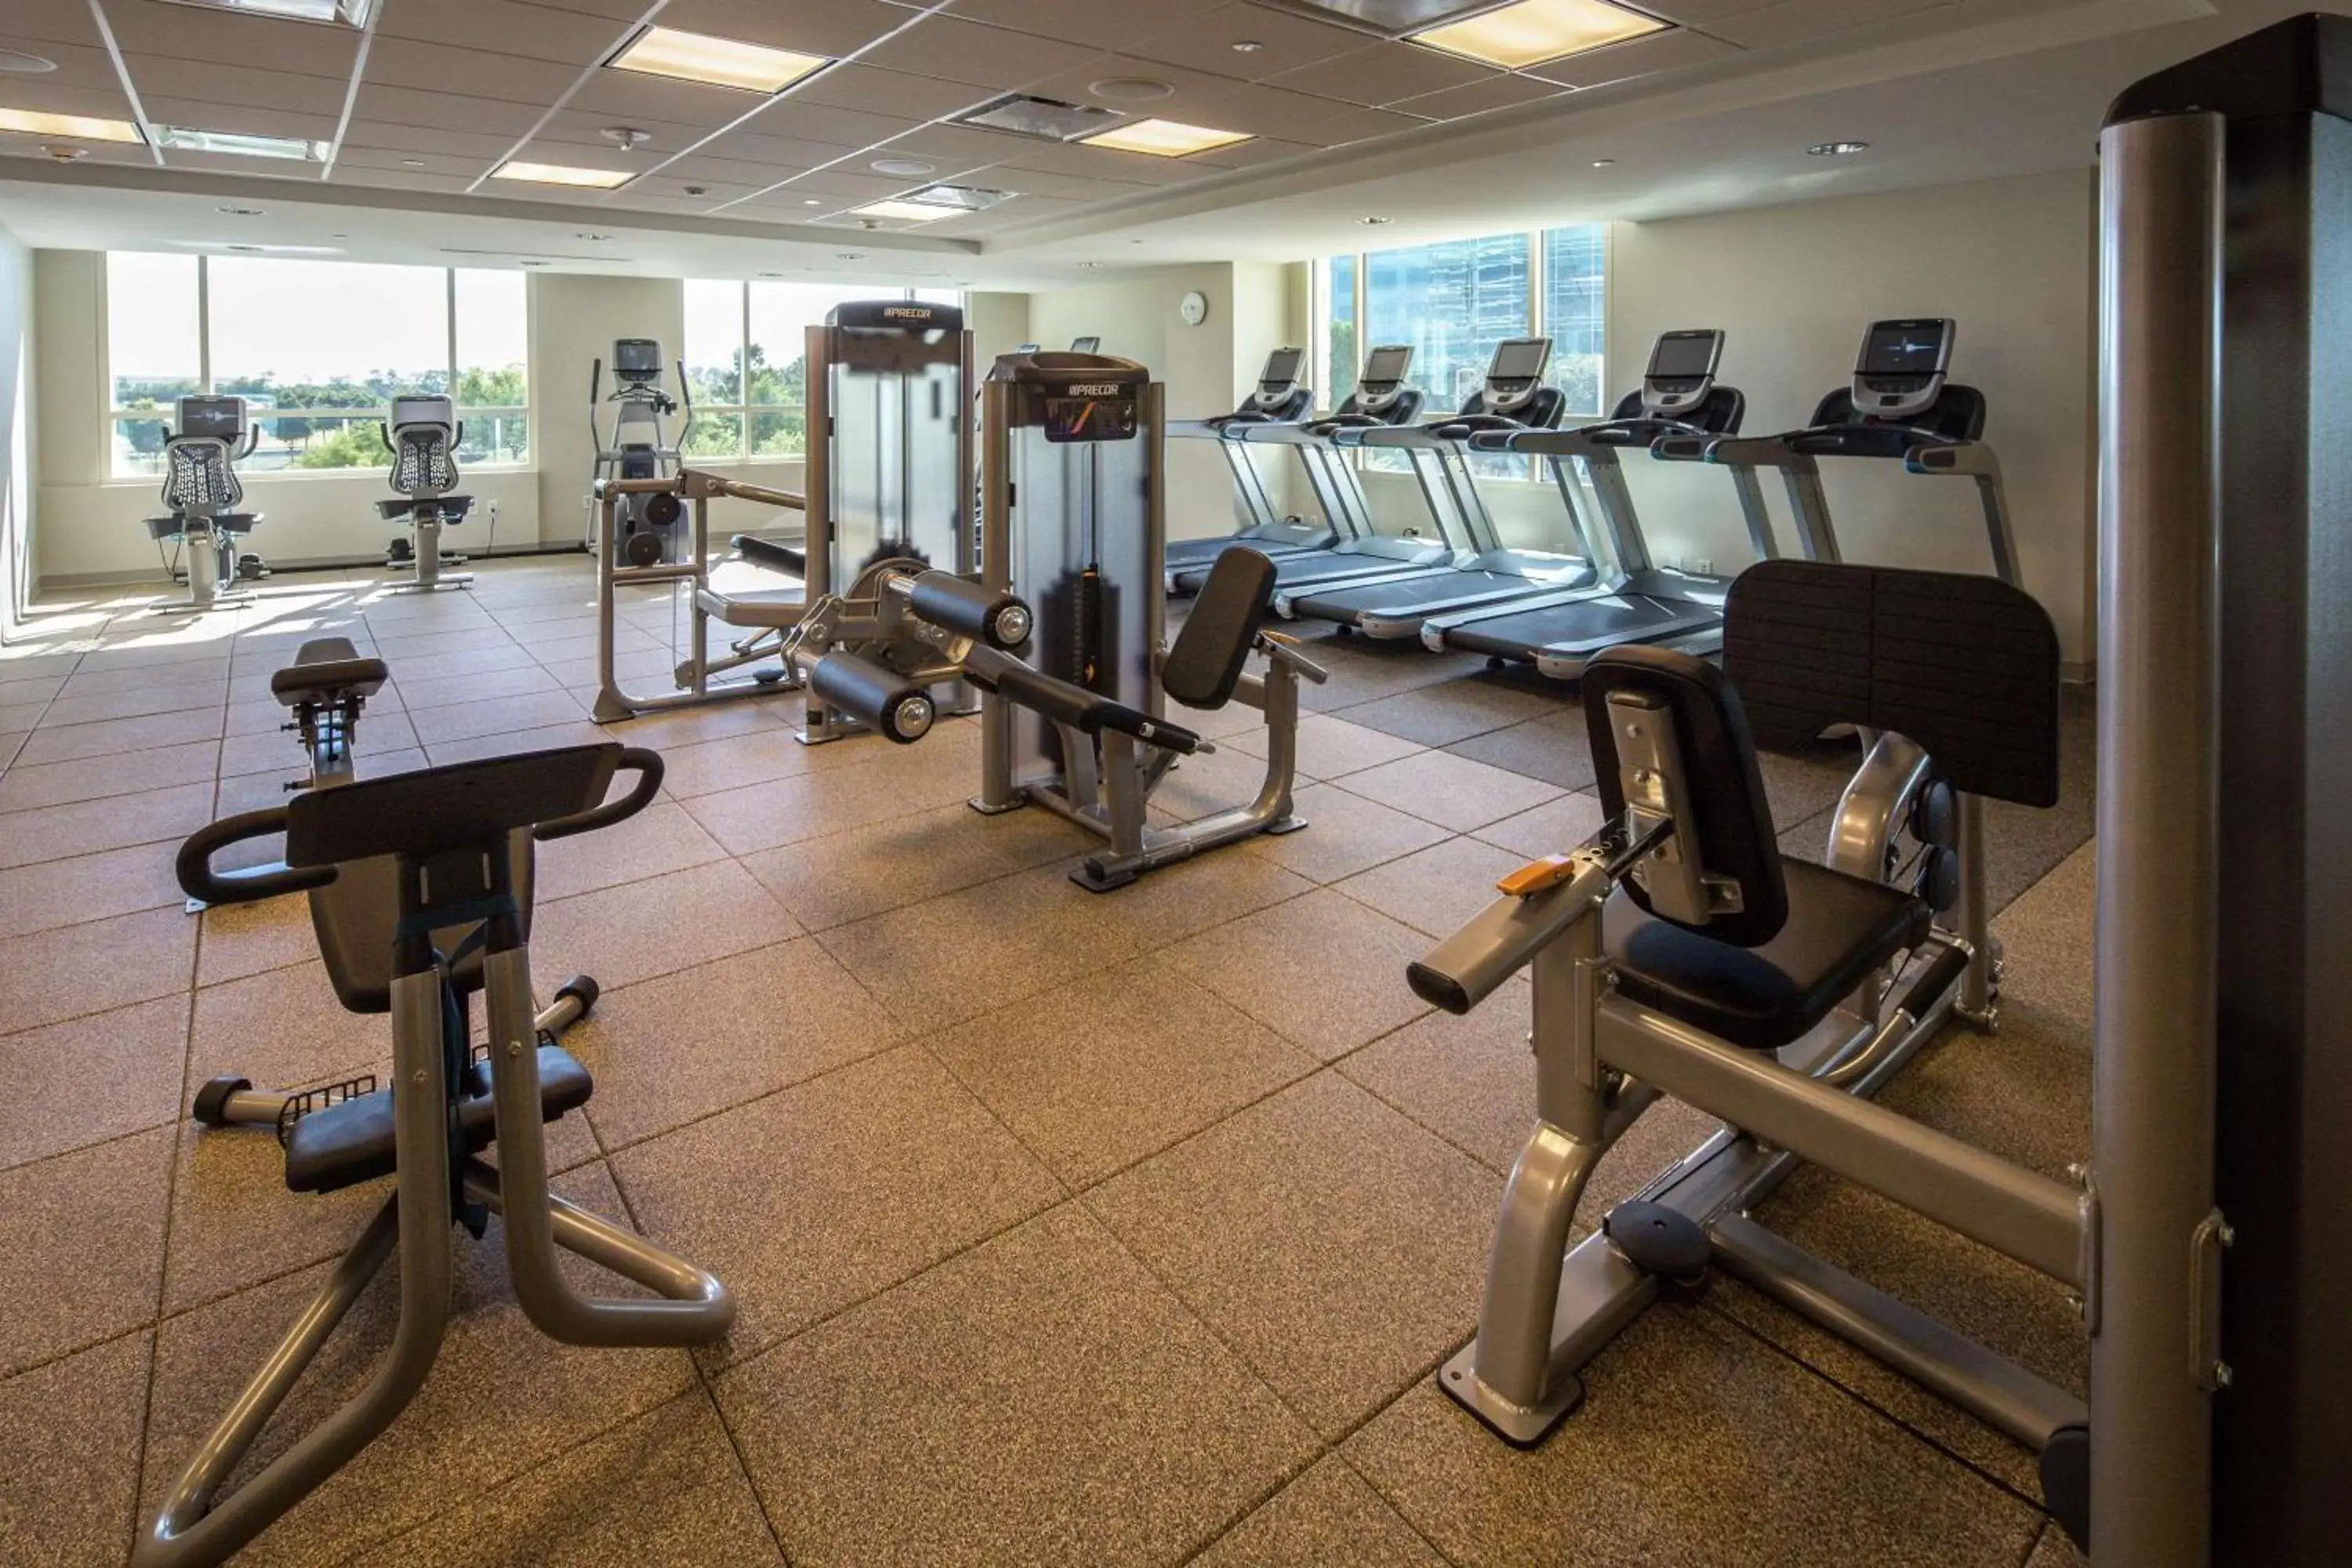 Fitness centre/facilities, Fitness Center/Facilities in Hilton Dallas/Plano Granite Park